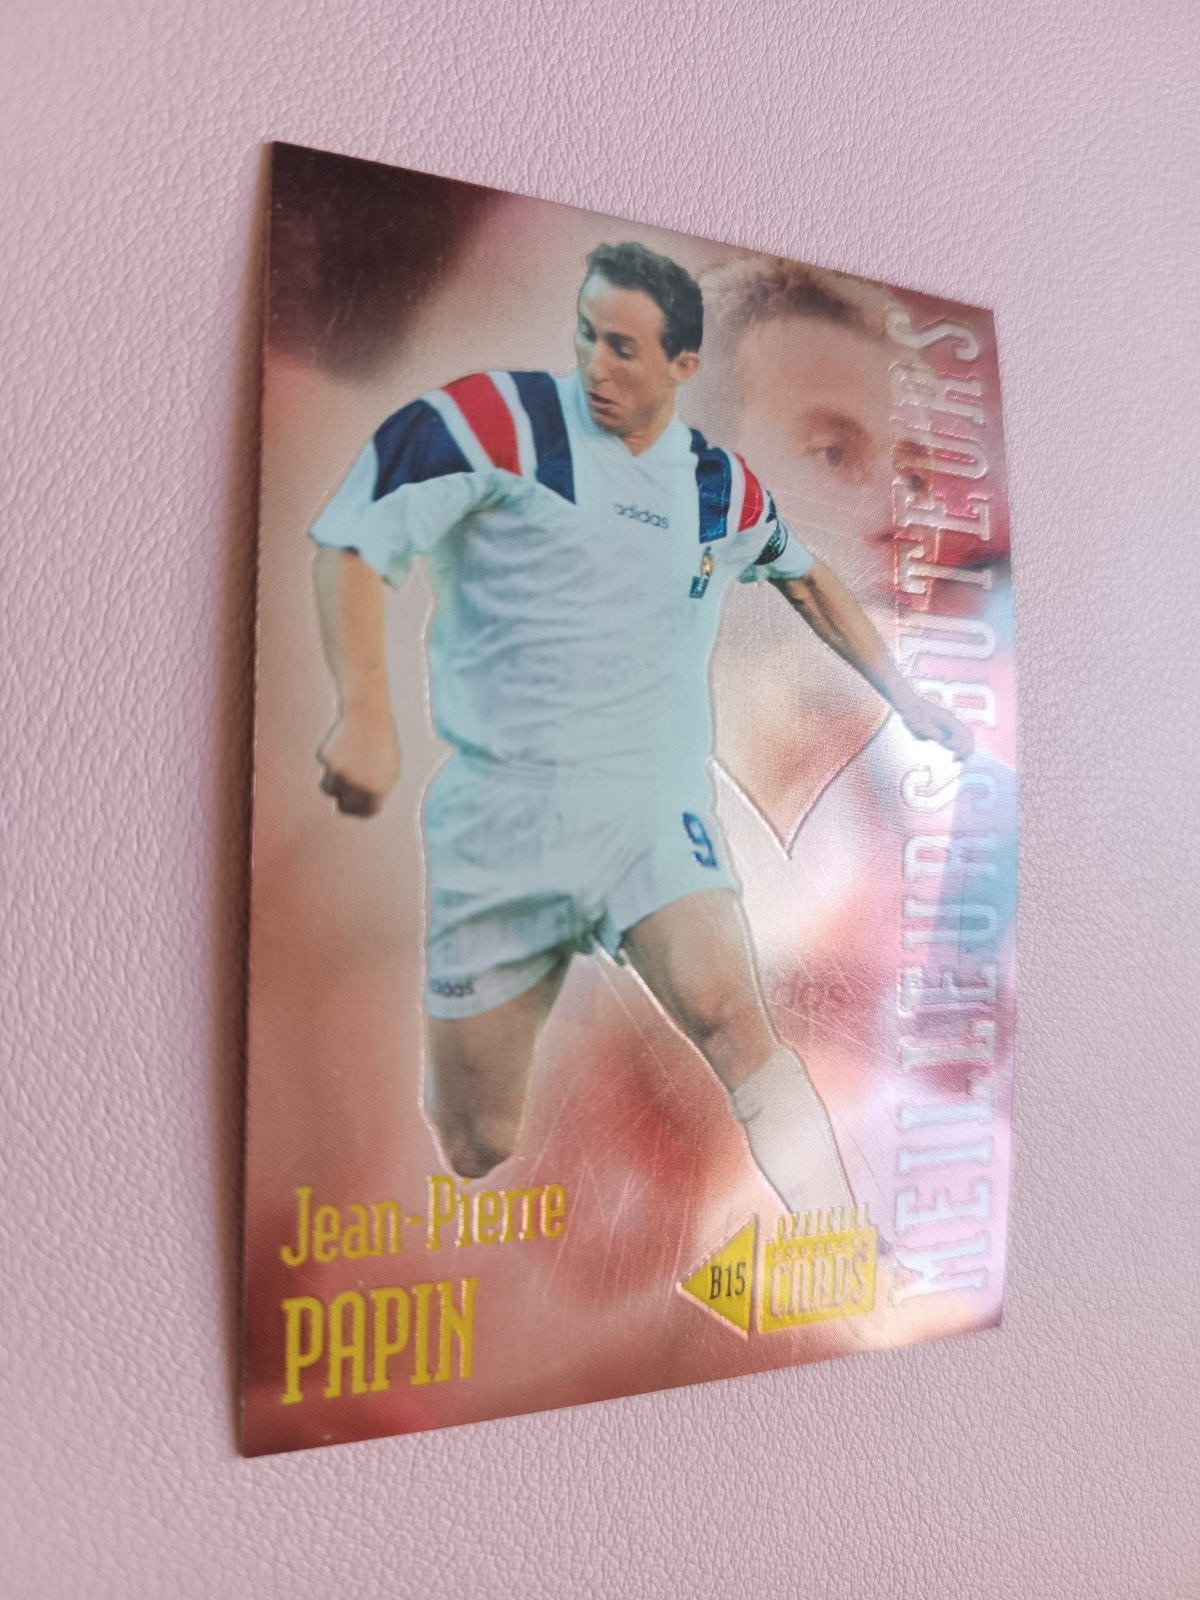 JEAN PIERRE PAPIN FOOTBALL CARDS 1997 TEAM DE FRANCE B15 BEST SCORERS OM